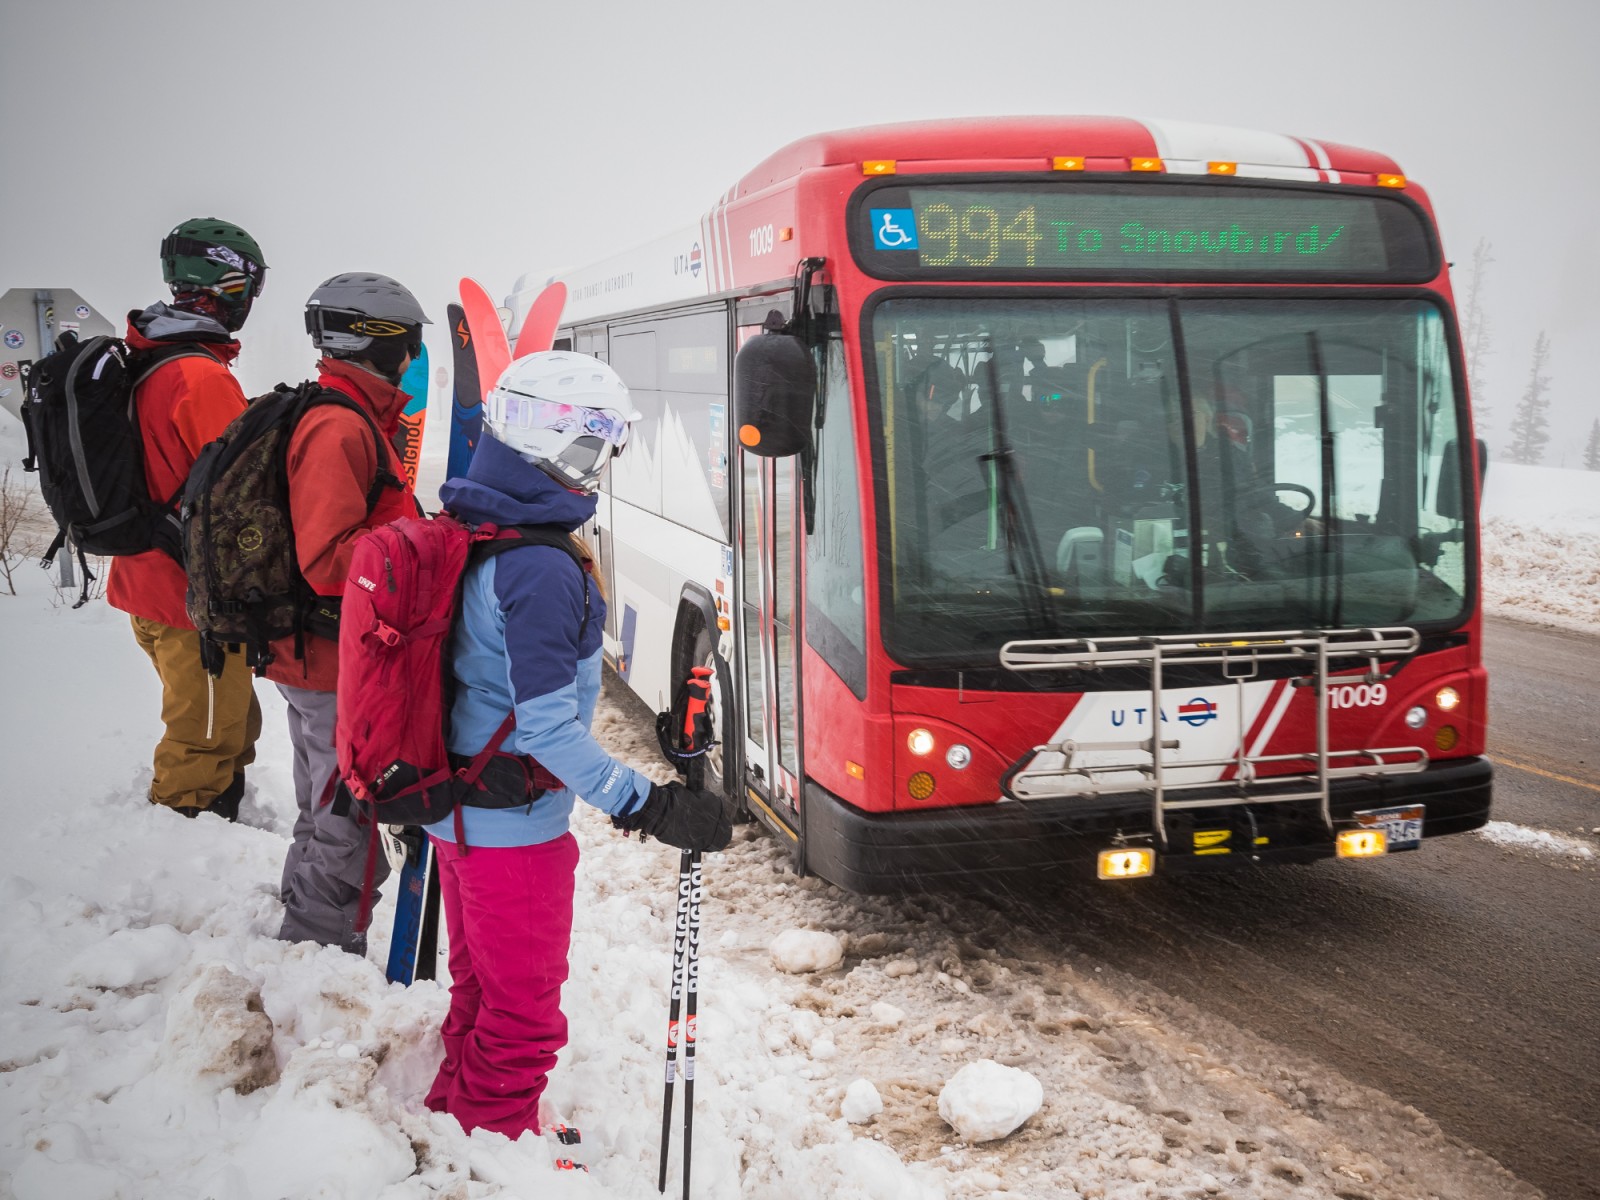 bus trips to ski resorts